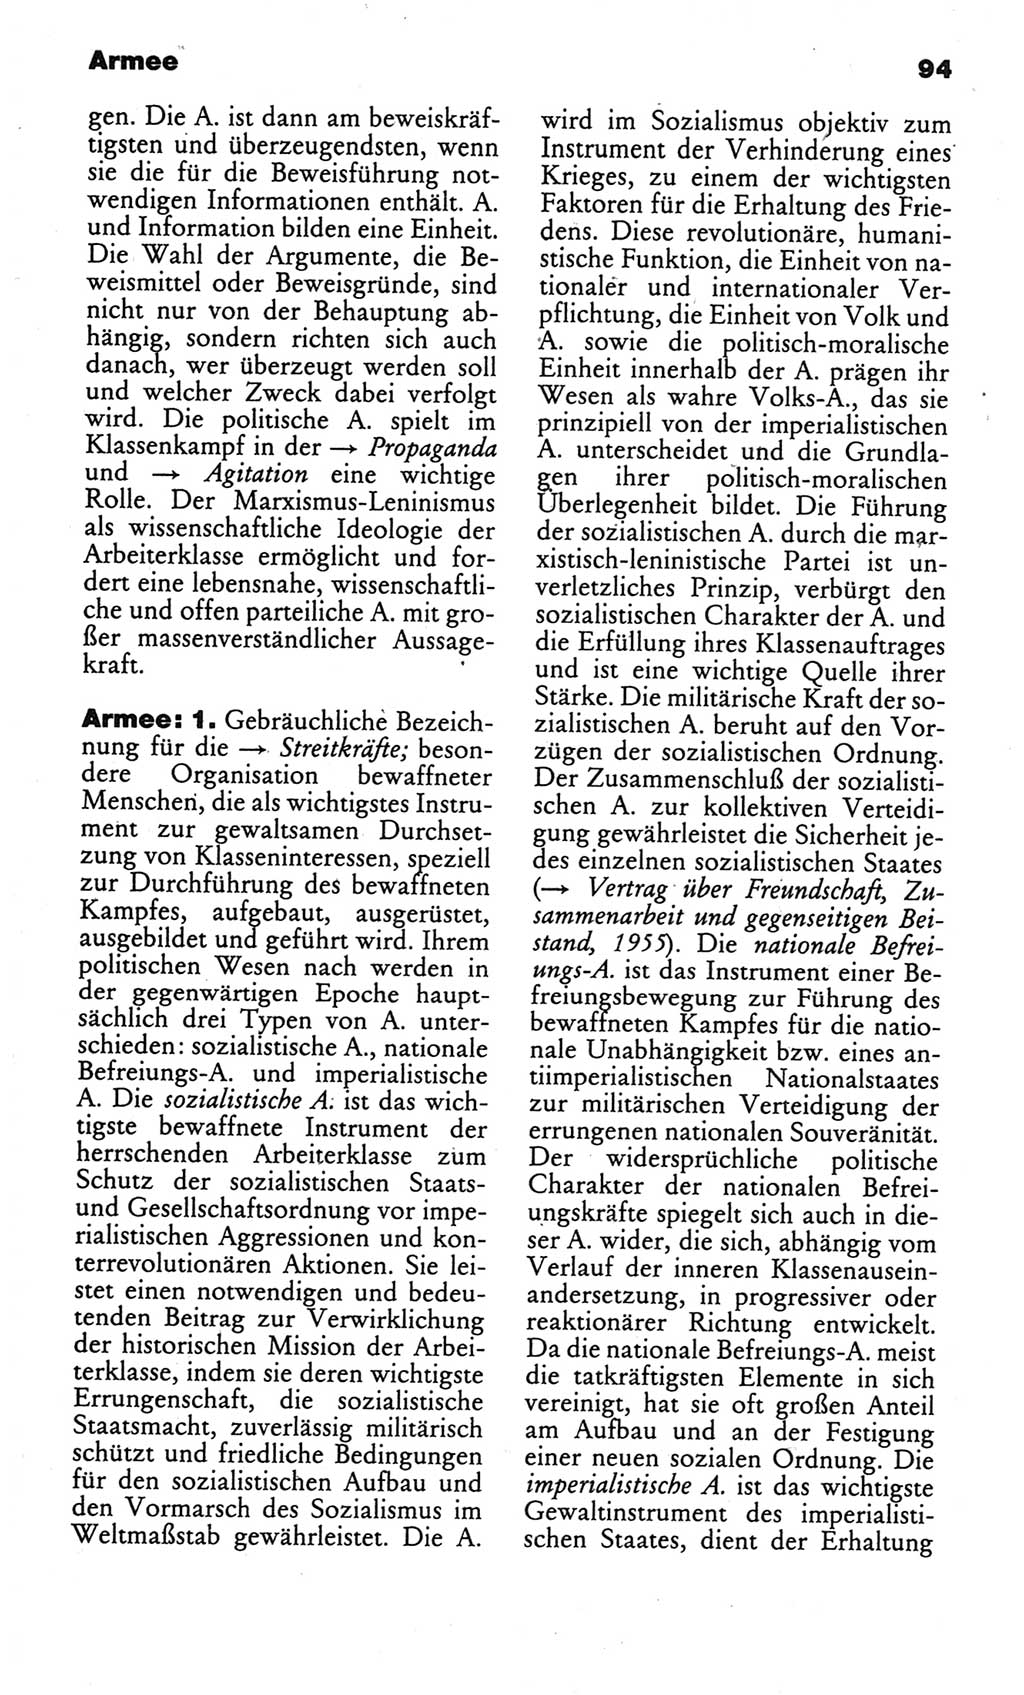 Kleines politisches Wörterbuch [Deutsche Demokratische Republik (DDR)] 1986, Seite 94 (Kl. pol. Wb. DDR 1986, S. 94)